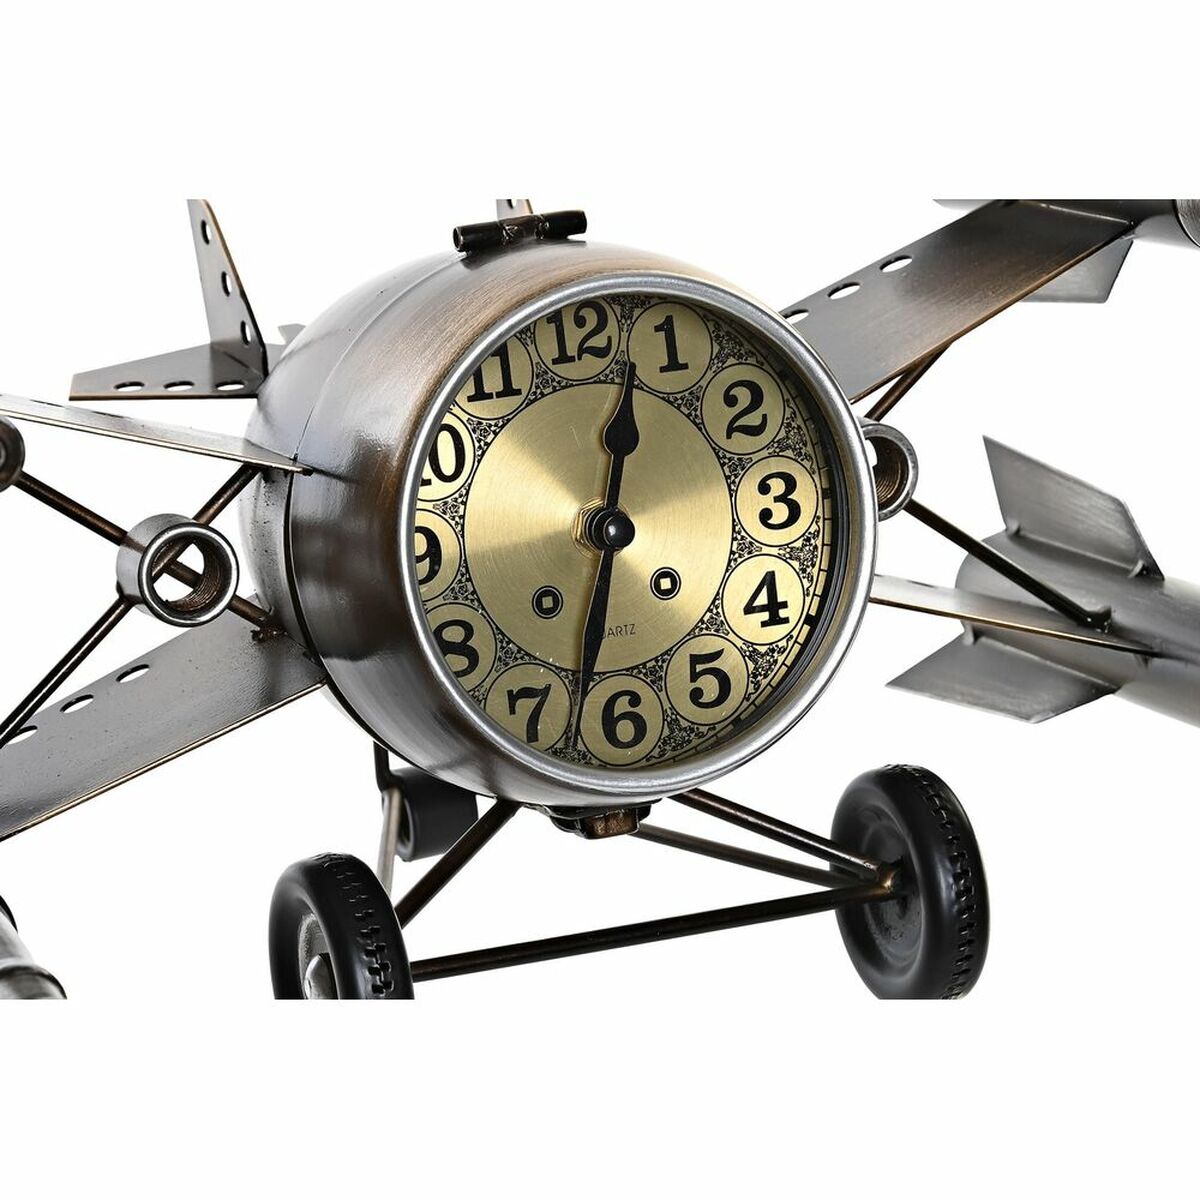 Lot de 2 Horloges de table Design Avion en fer Doré et Argenté (38,5 x 28 x 19,5 cm) (2 Unités)